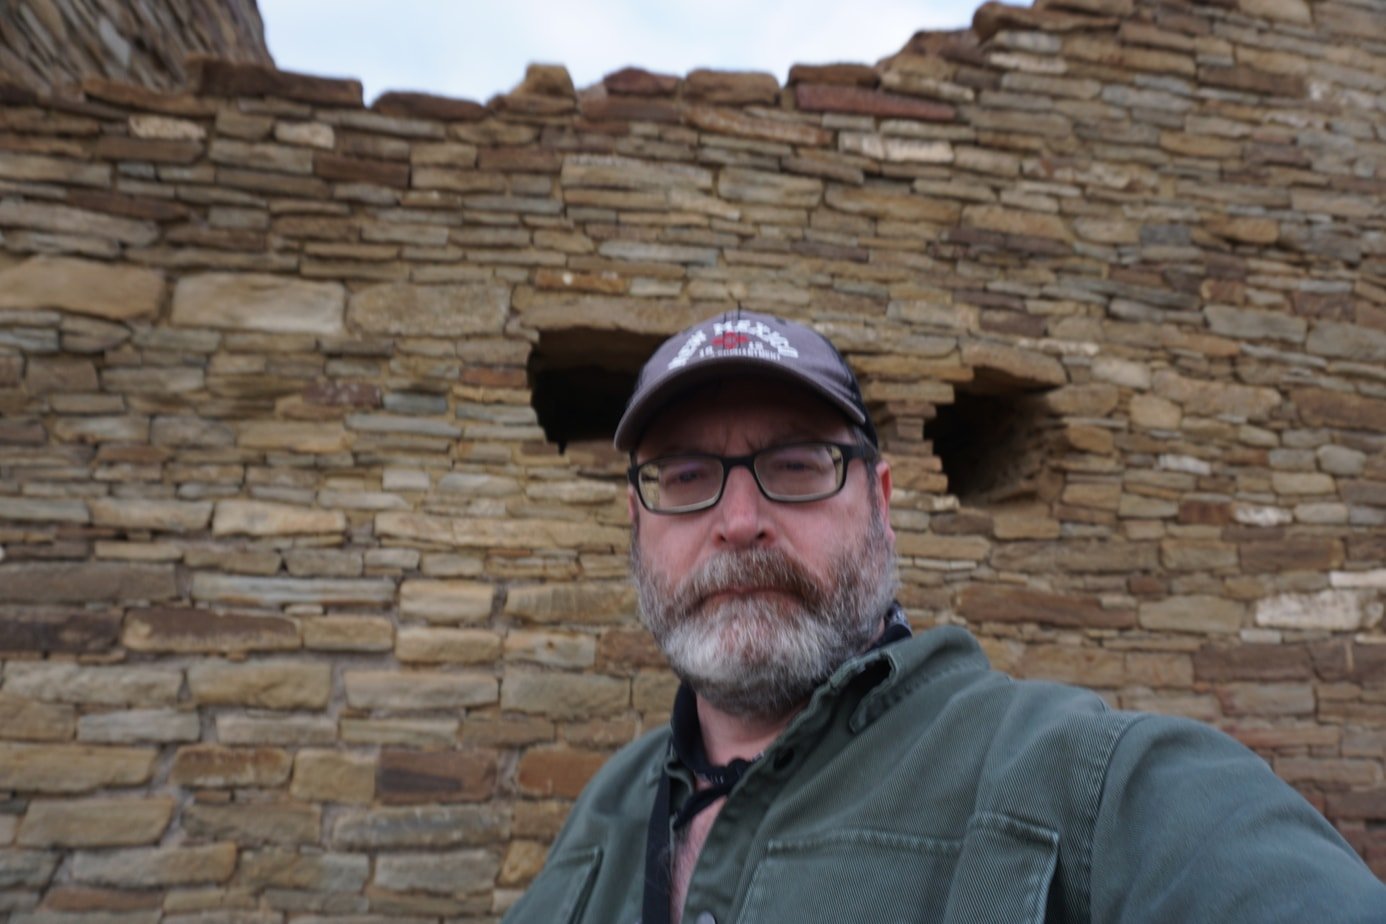 John Gentry sa Chaco Culture National Historical Park Pueblo Bonito Ruins mga uso sa paglalakbay